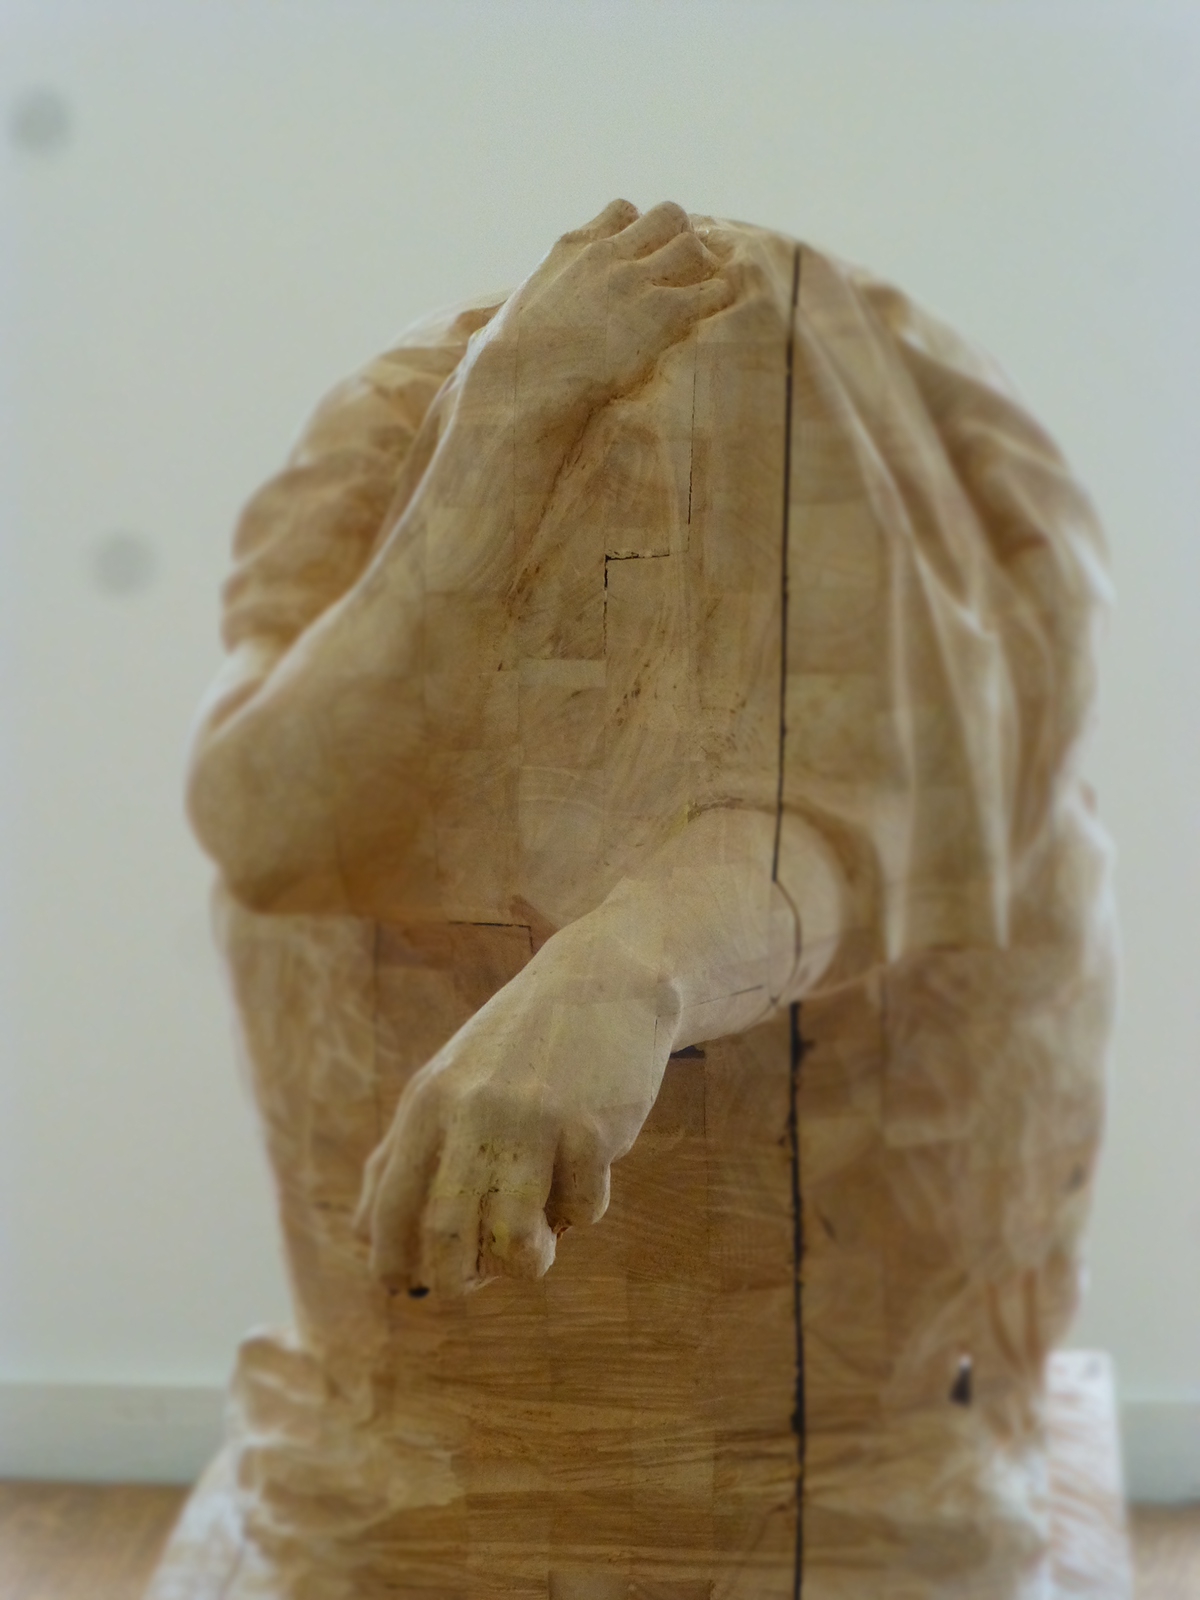 wood sculpture art beeldhouwen Beelden hout